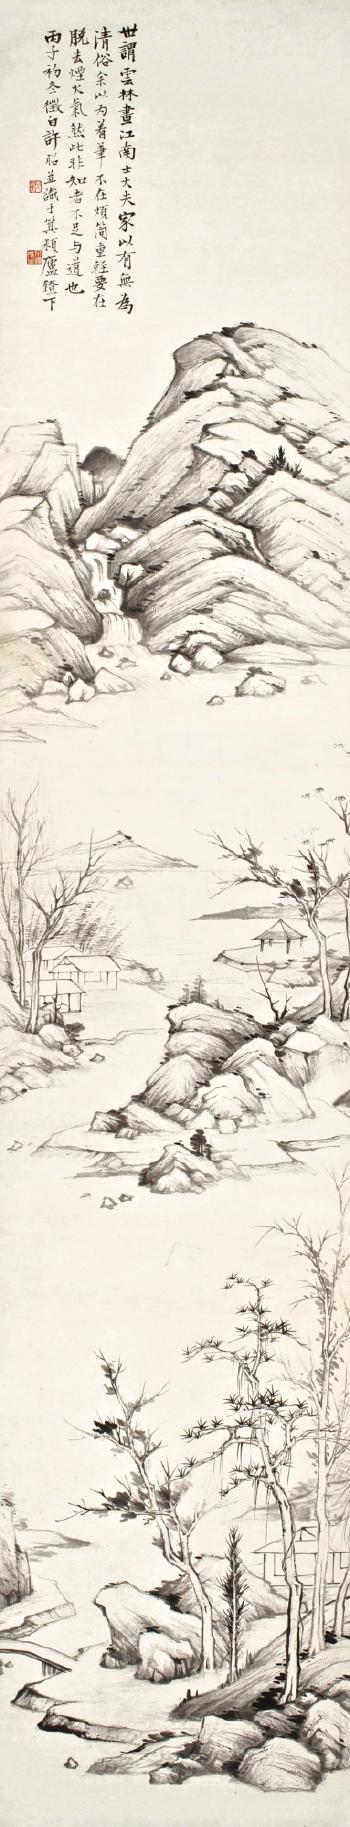 Landscape After Ni Zan by 
																	 Xu Zhao